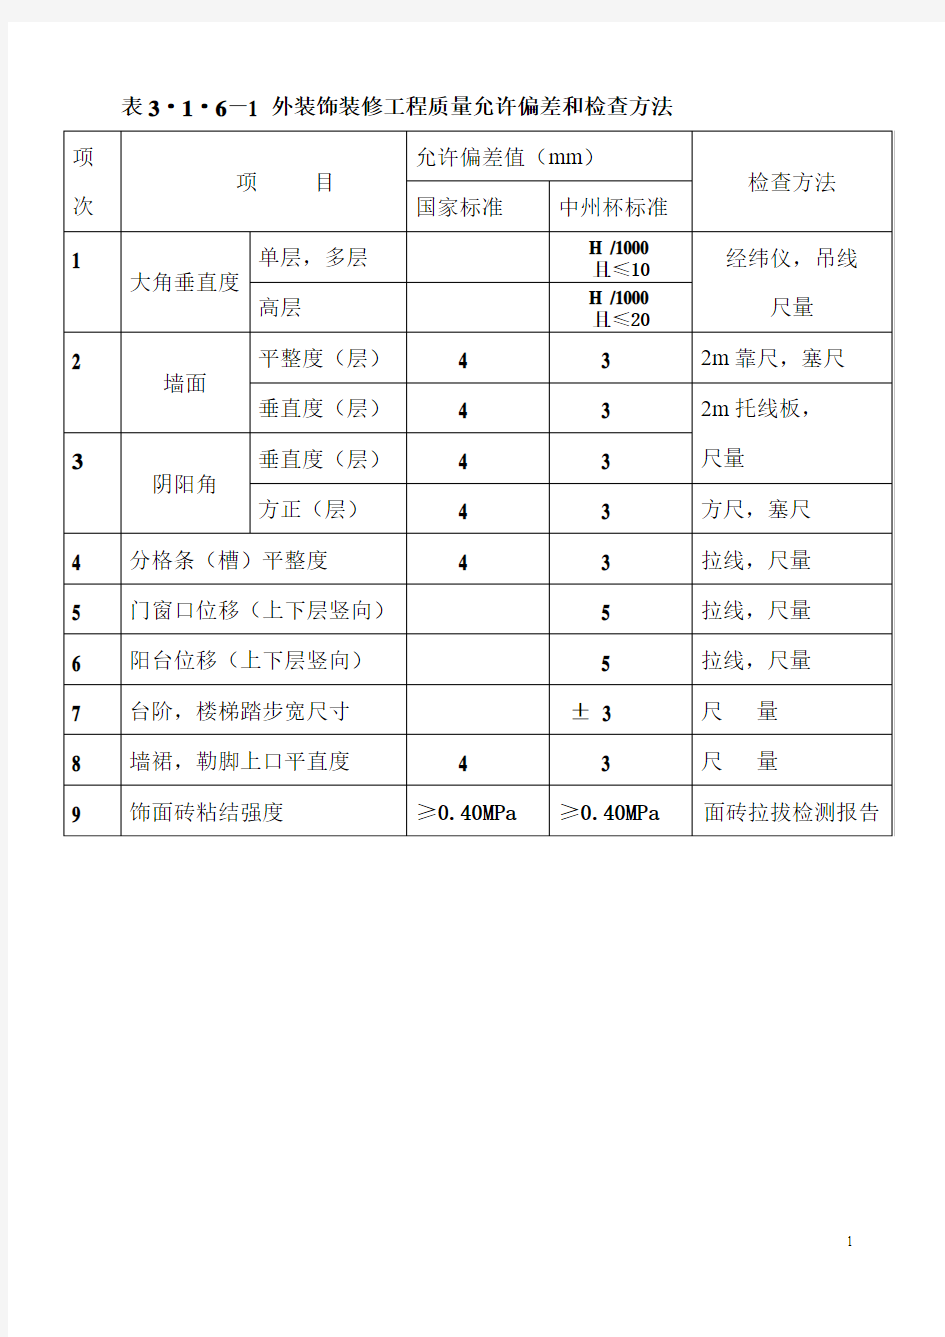 河南省建设工程中州杯”质量评审标准表